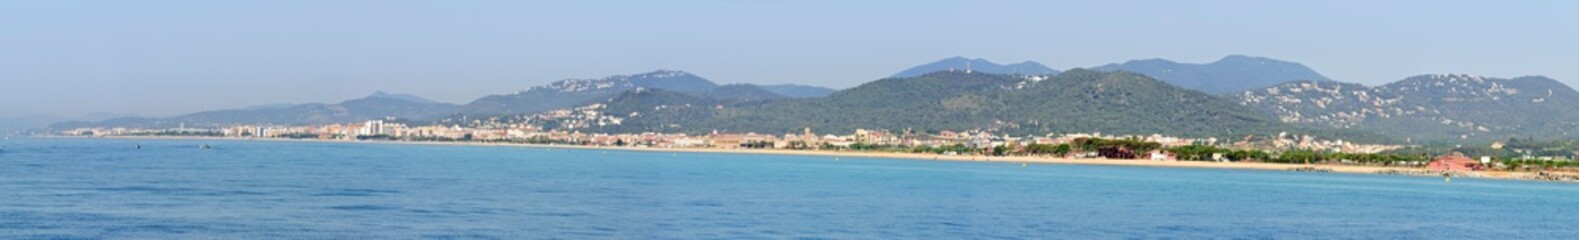 Costa Brava coast between Calella and Blanes, Catalonia, Spain.